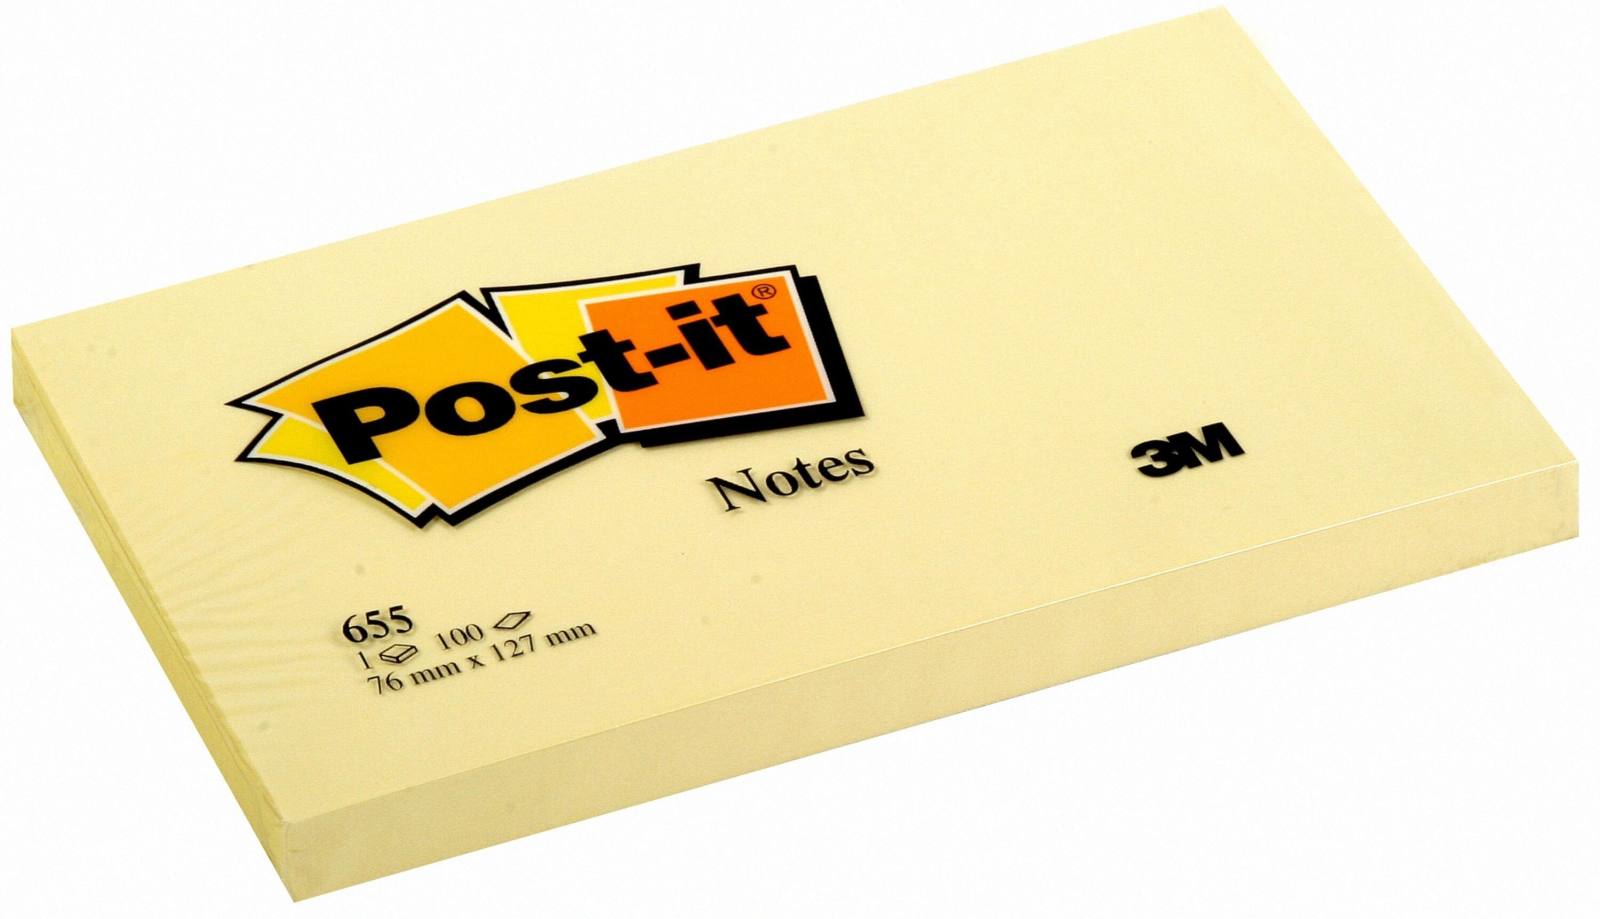 3M Post-it Notes 655, 127 mm x 76 mm, giallo, 1 confezione = 12x 1 blocchetto da 100 fogli